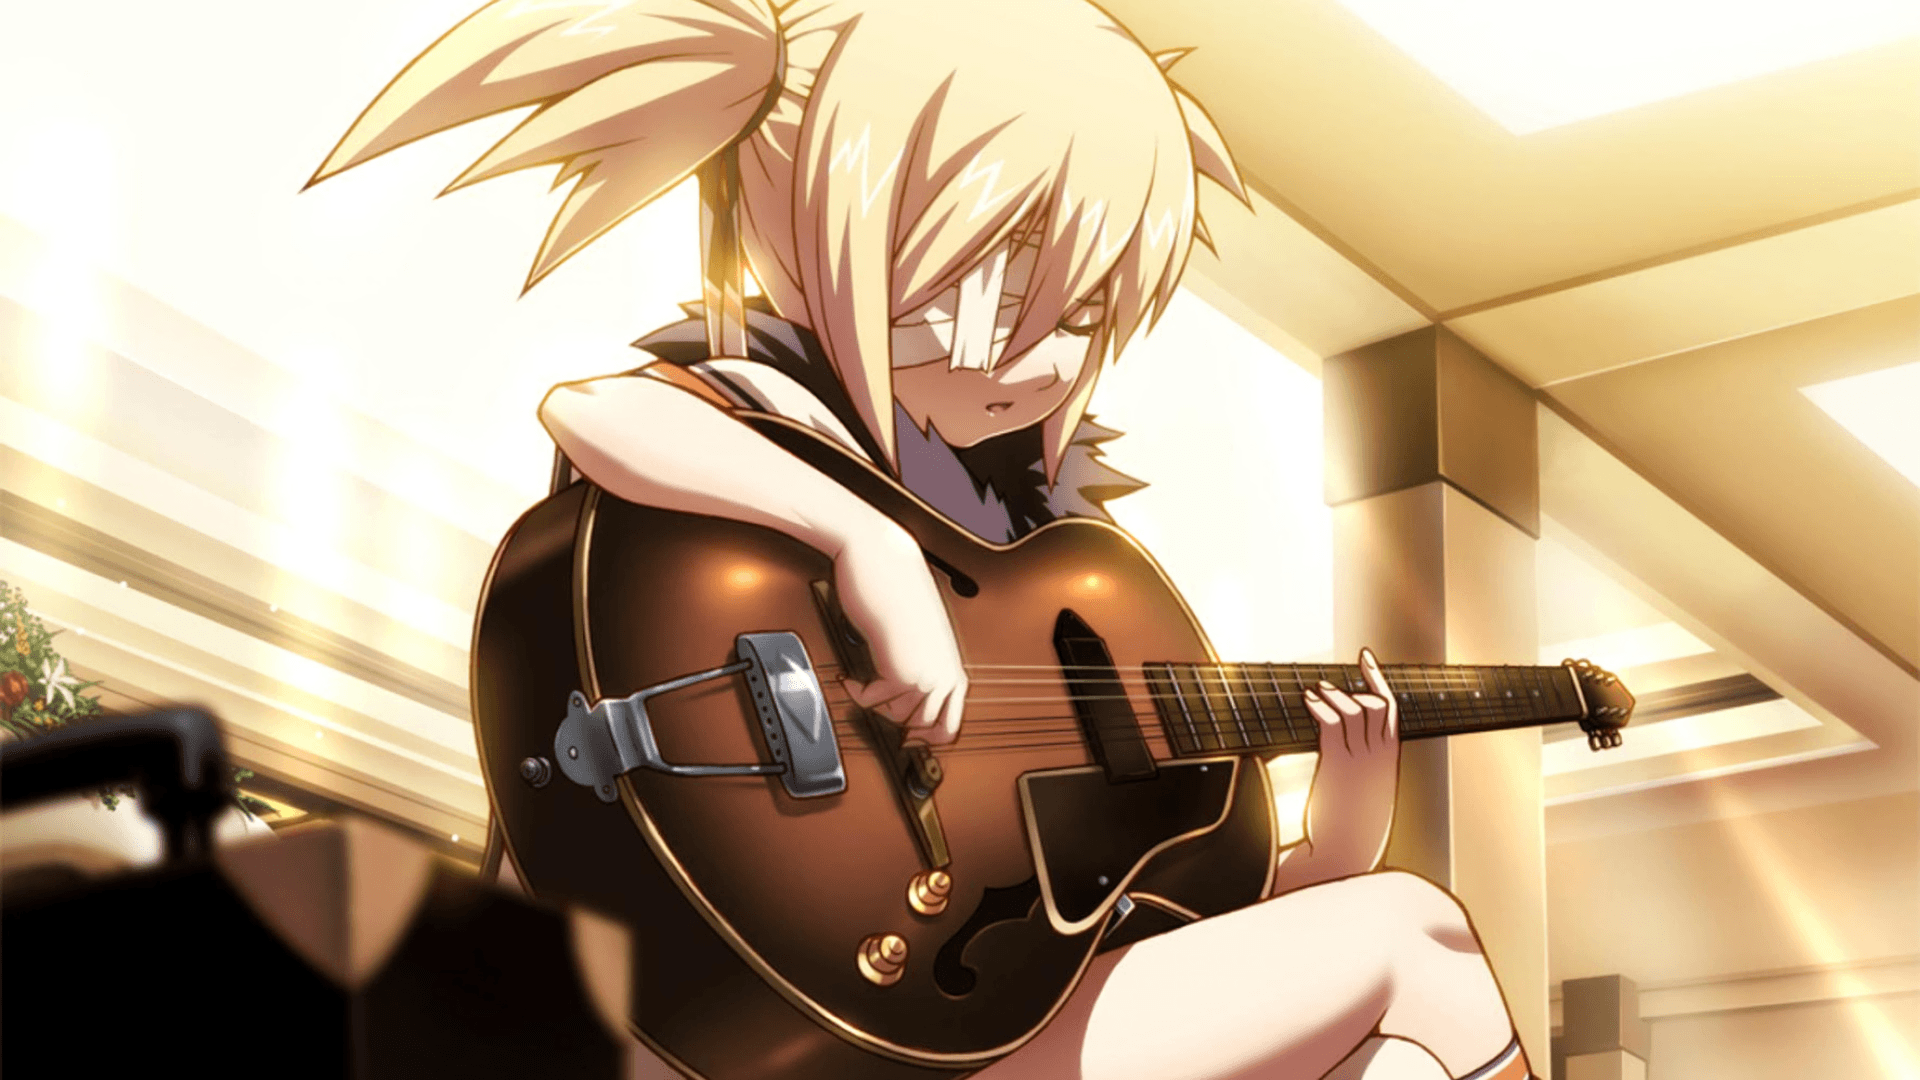 anime guitar player